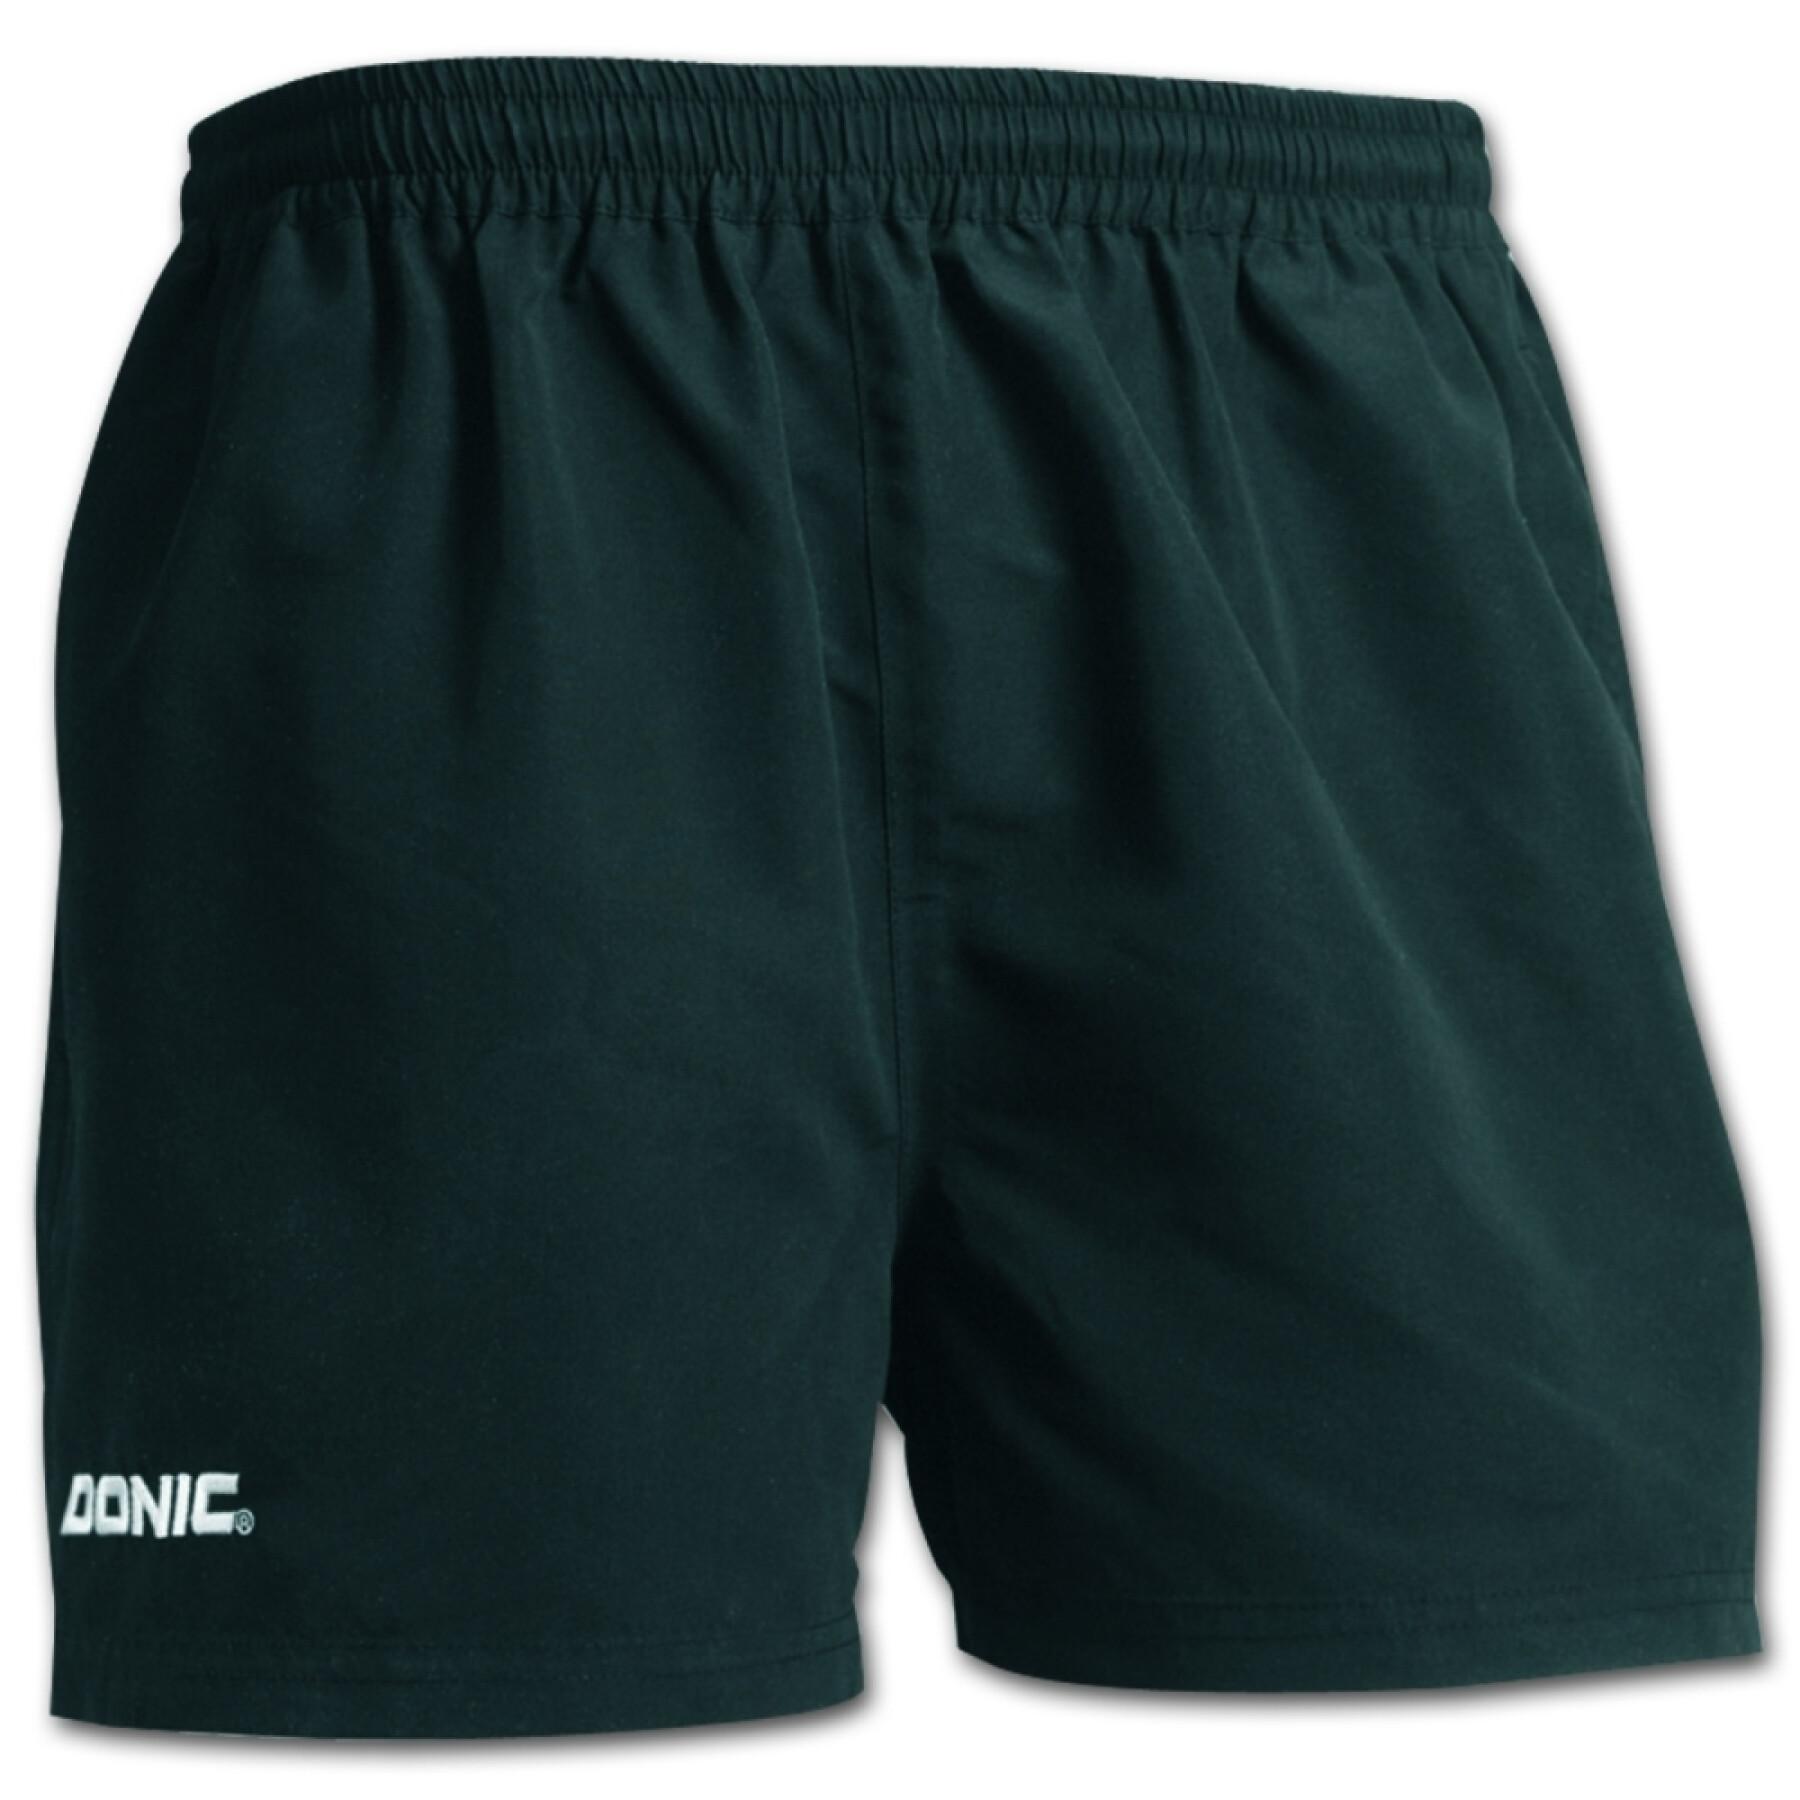 Pantalón corto para niños Donic Basic